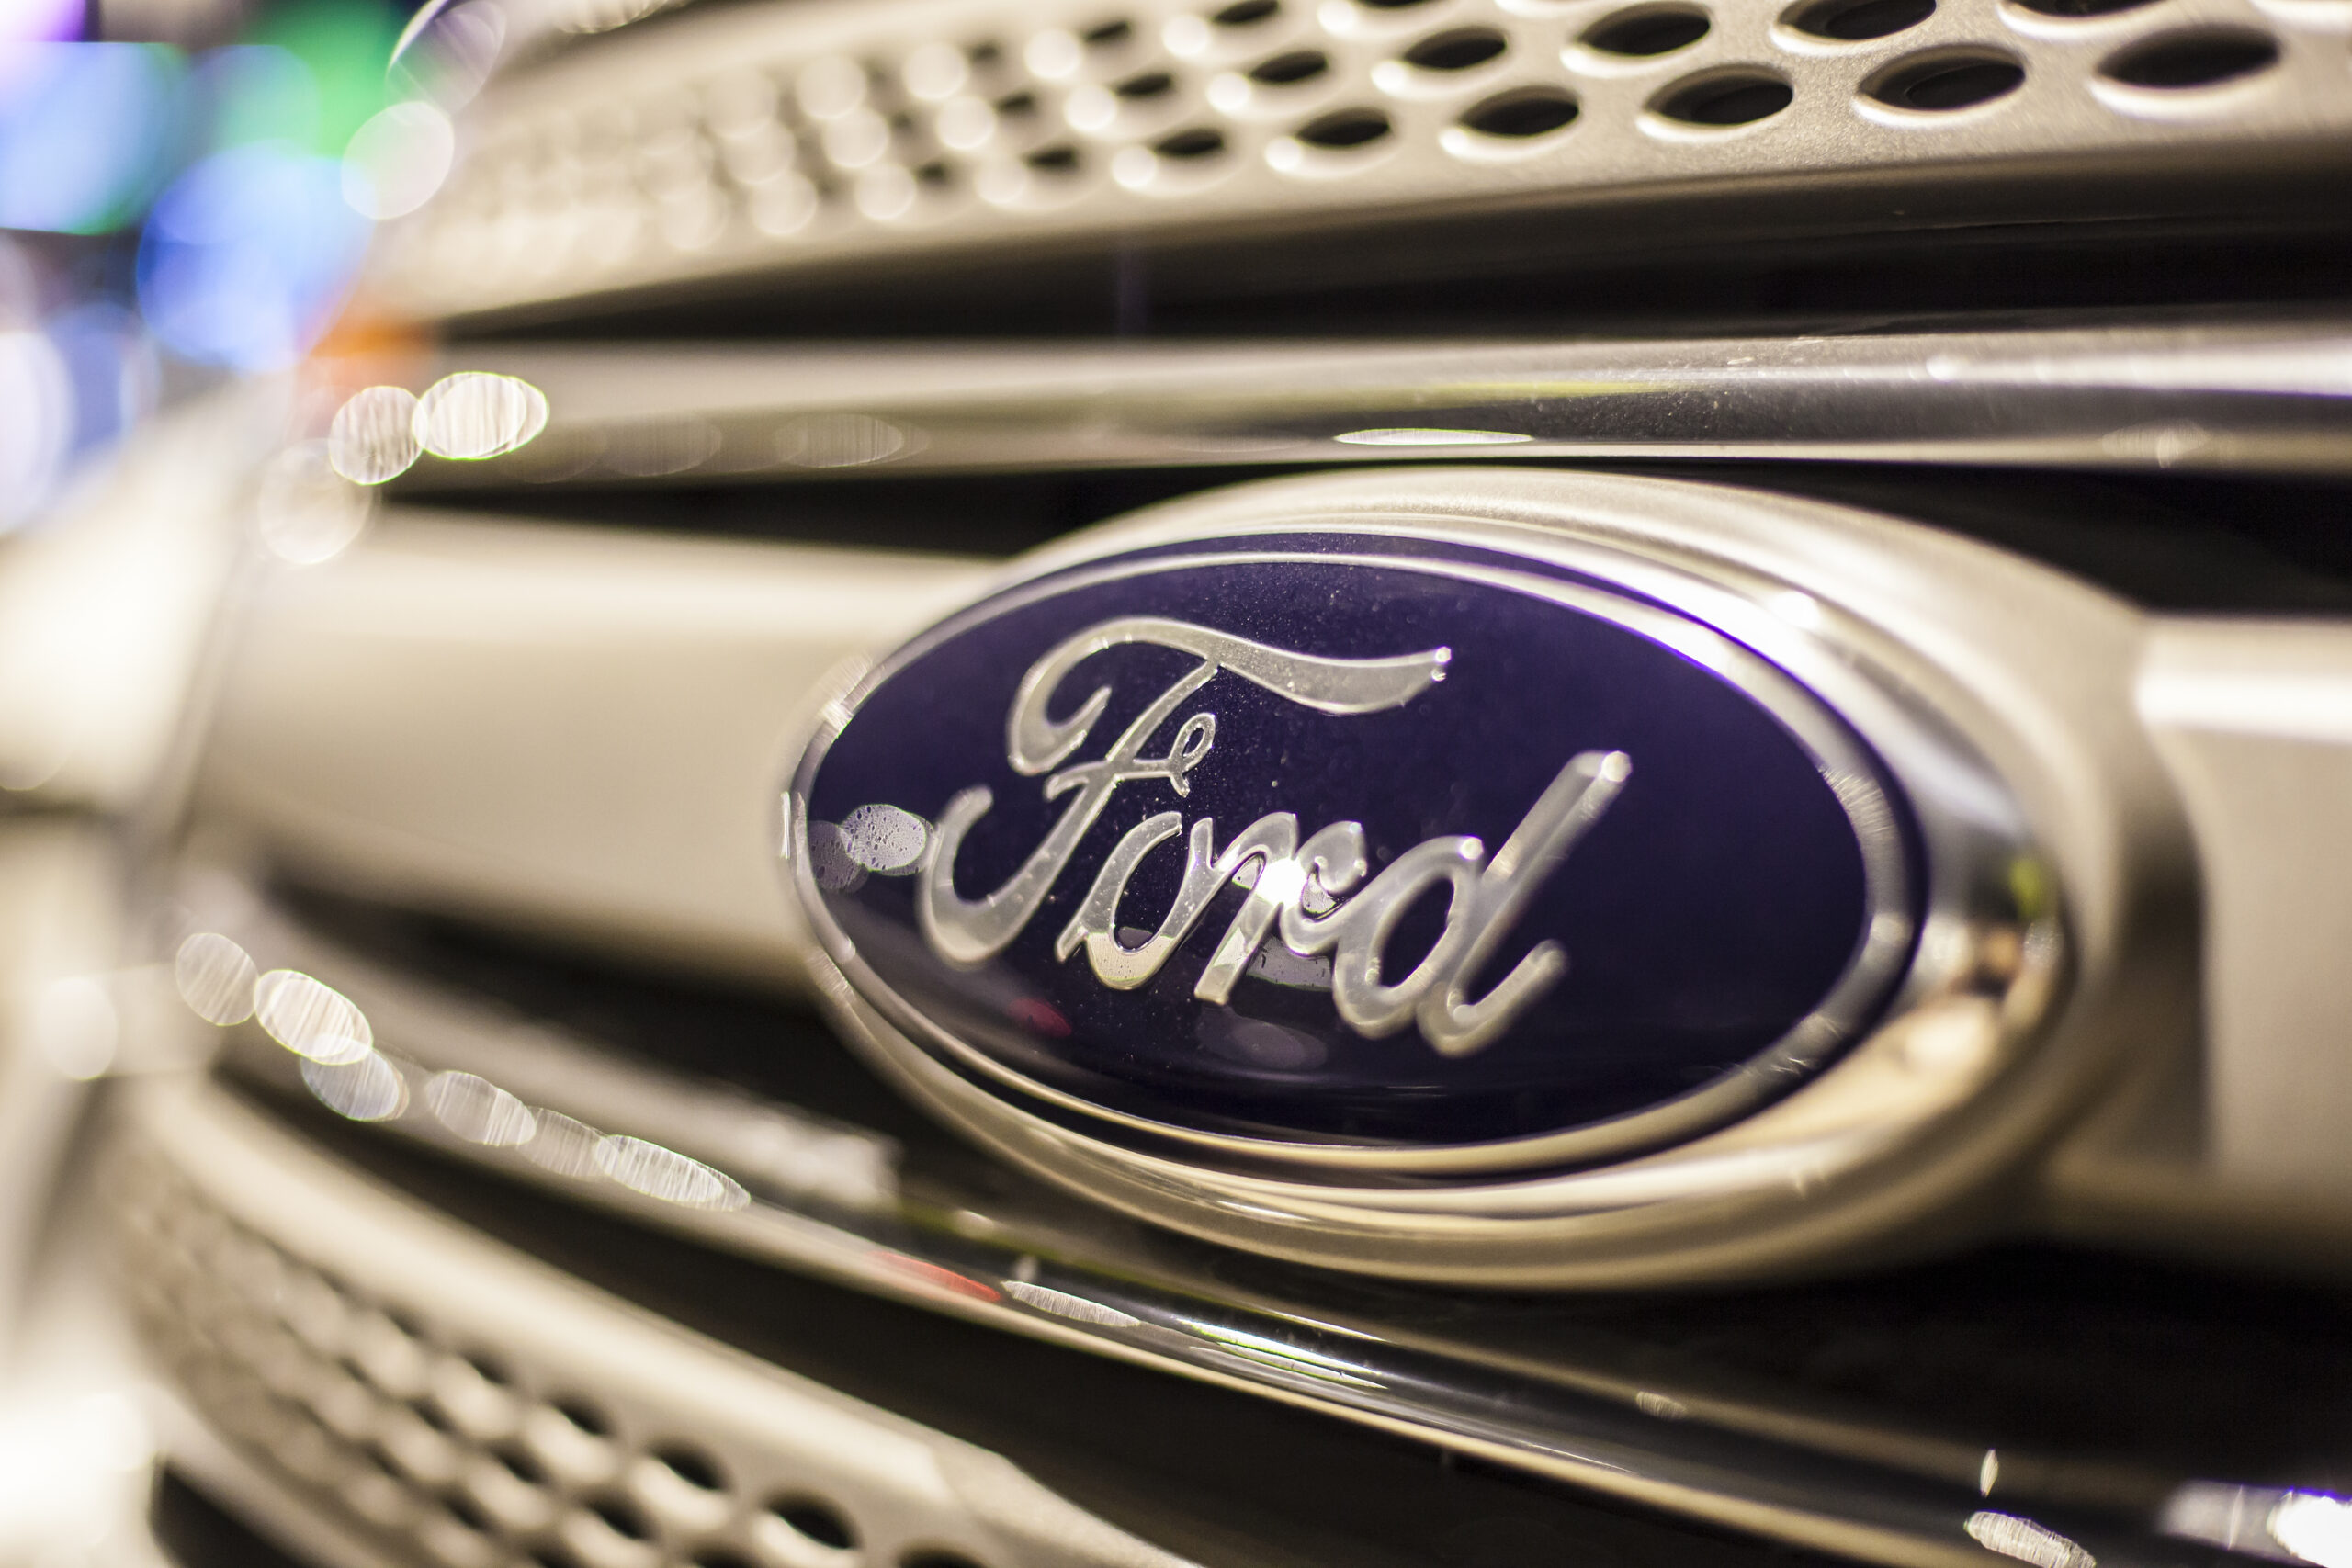 Ford, agenzia americana apre indagine su oltre 200.000 veicoli